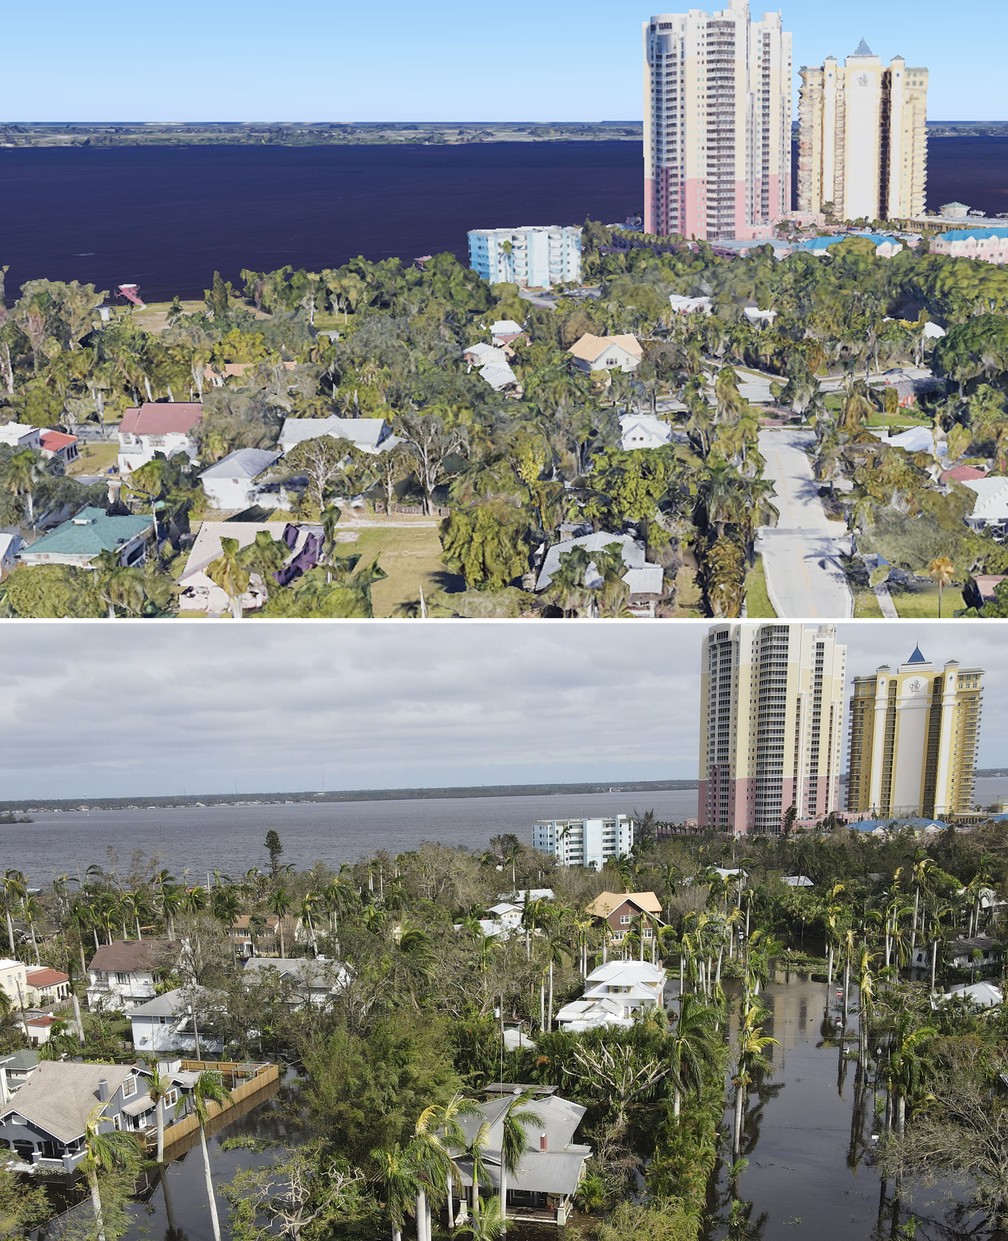 Casas perto do centro de Fort Myers ficaram inundadas após passagem do furacão Ian na Flórida, EUA — Foto: Google Earth e Rebecca Blackwell/AP